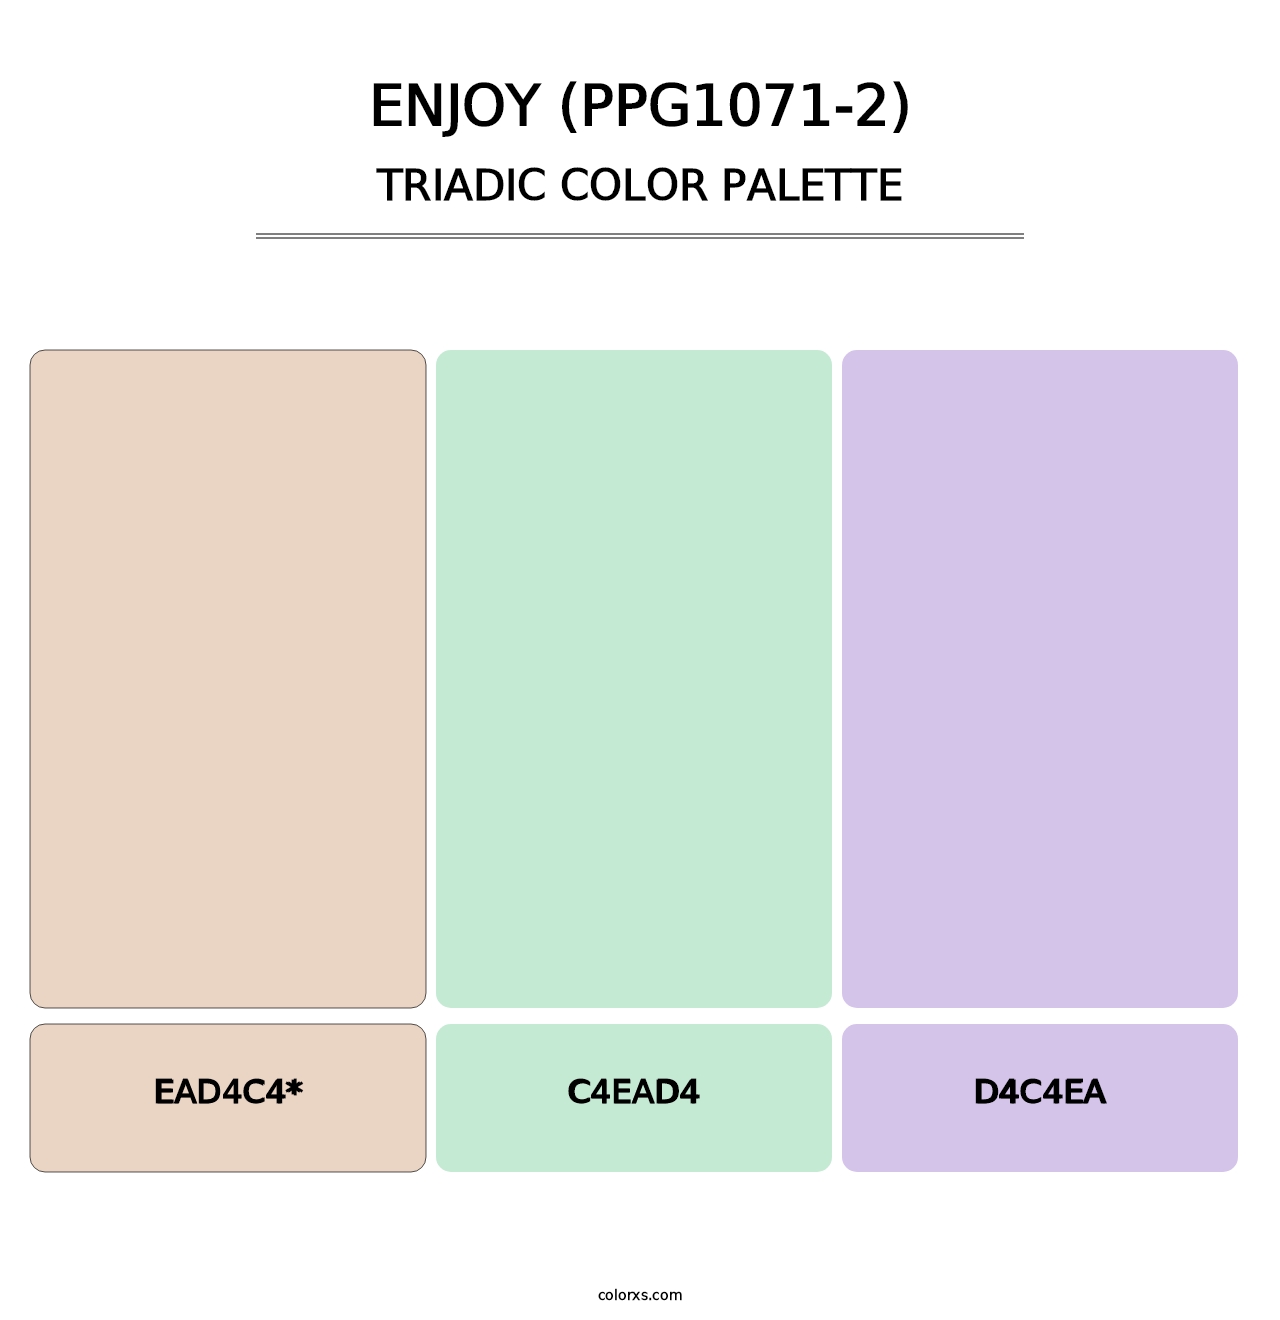 Enjoy (PPG1071-2) - Triadic Color Palette